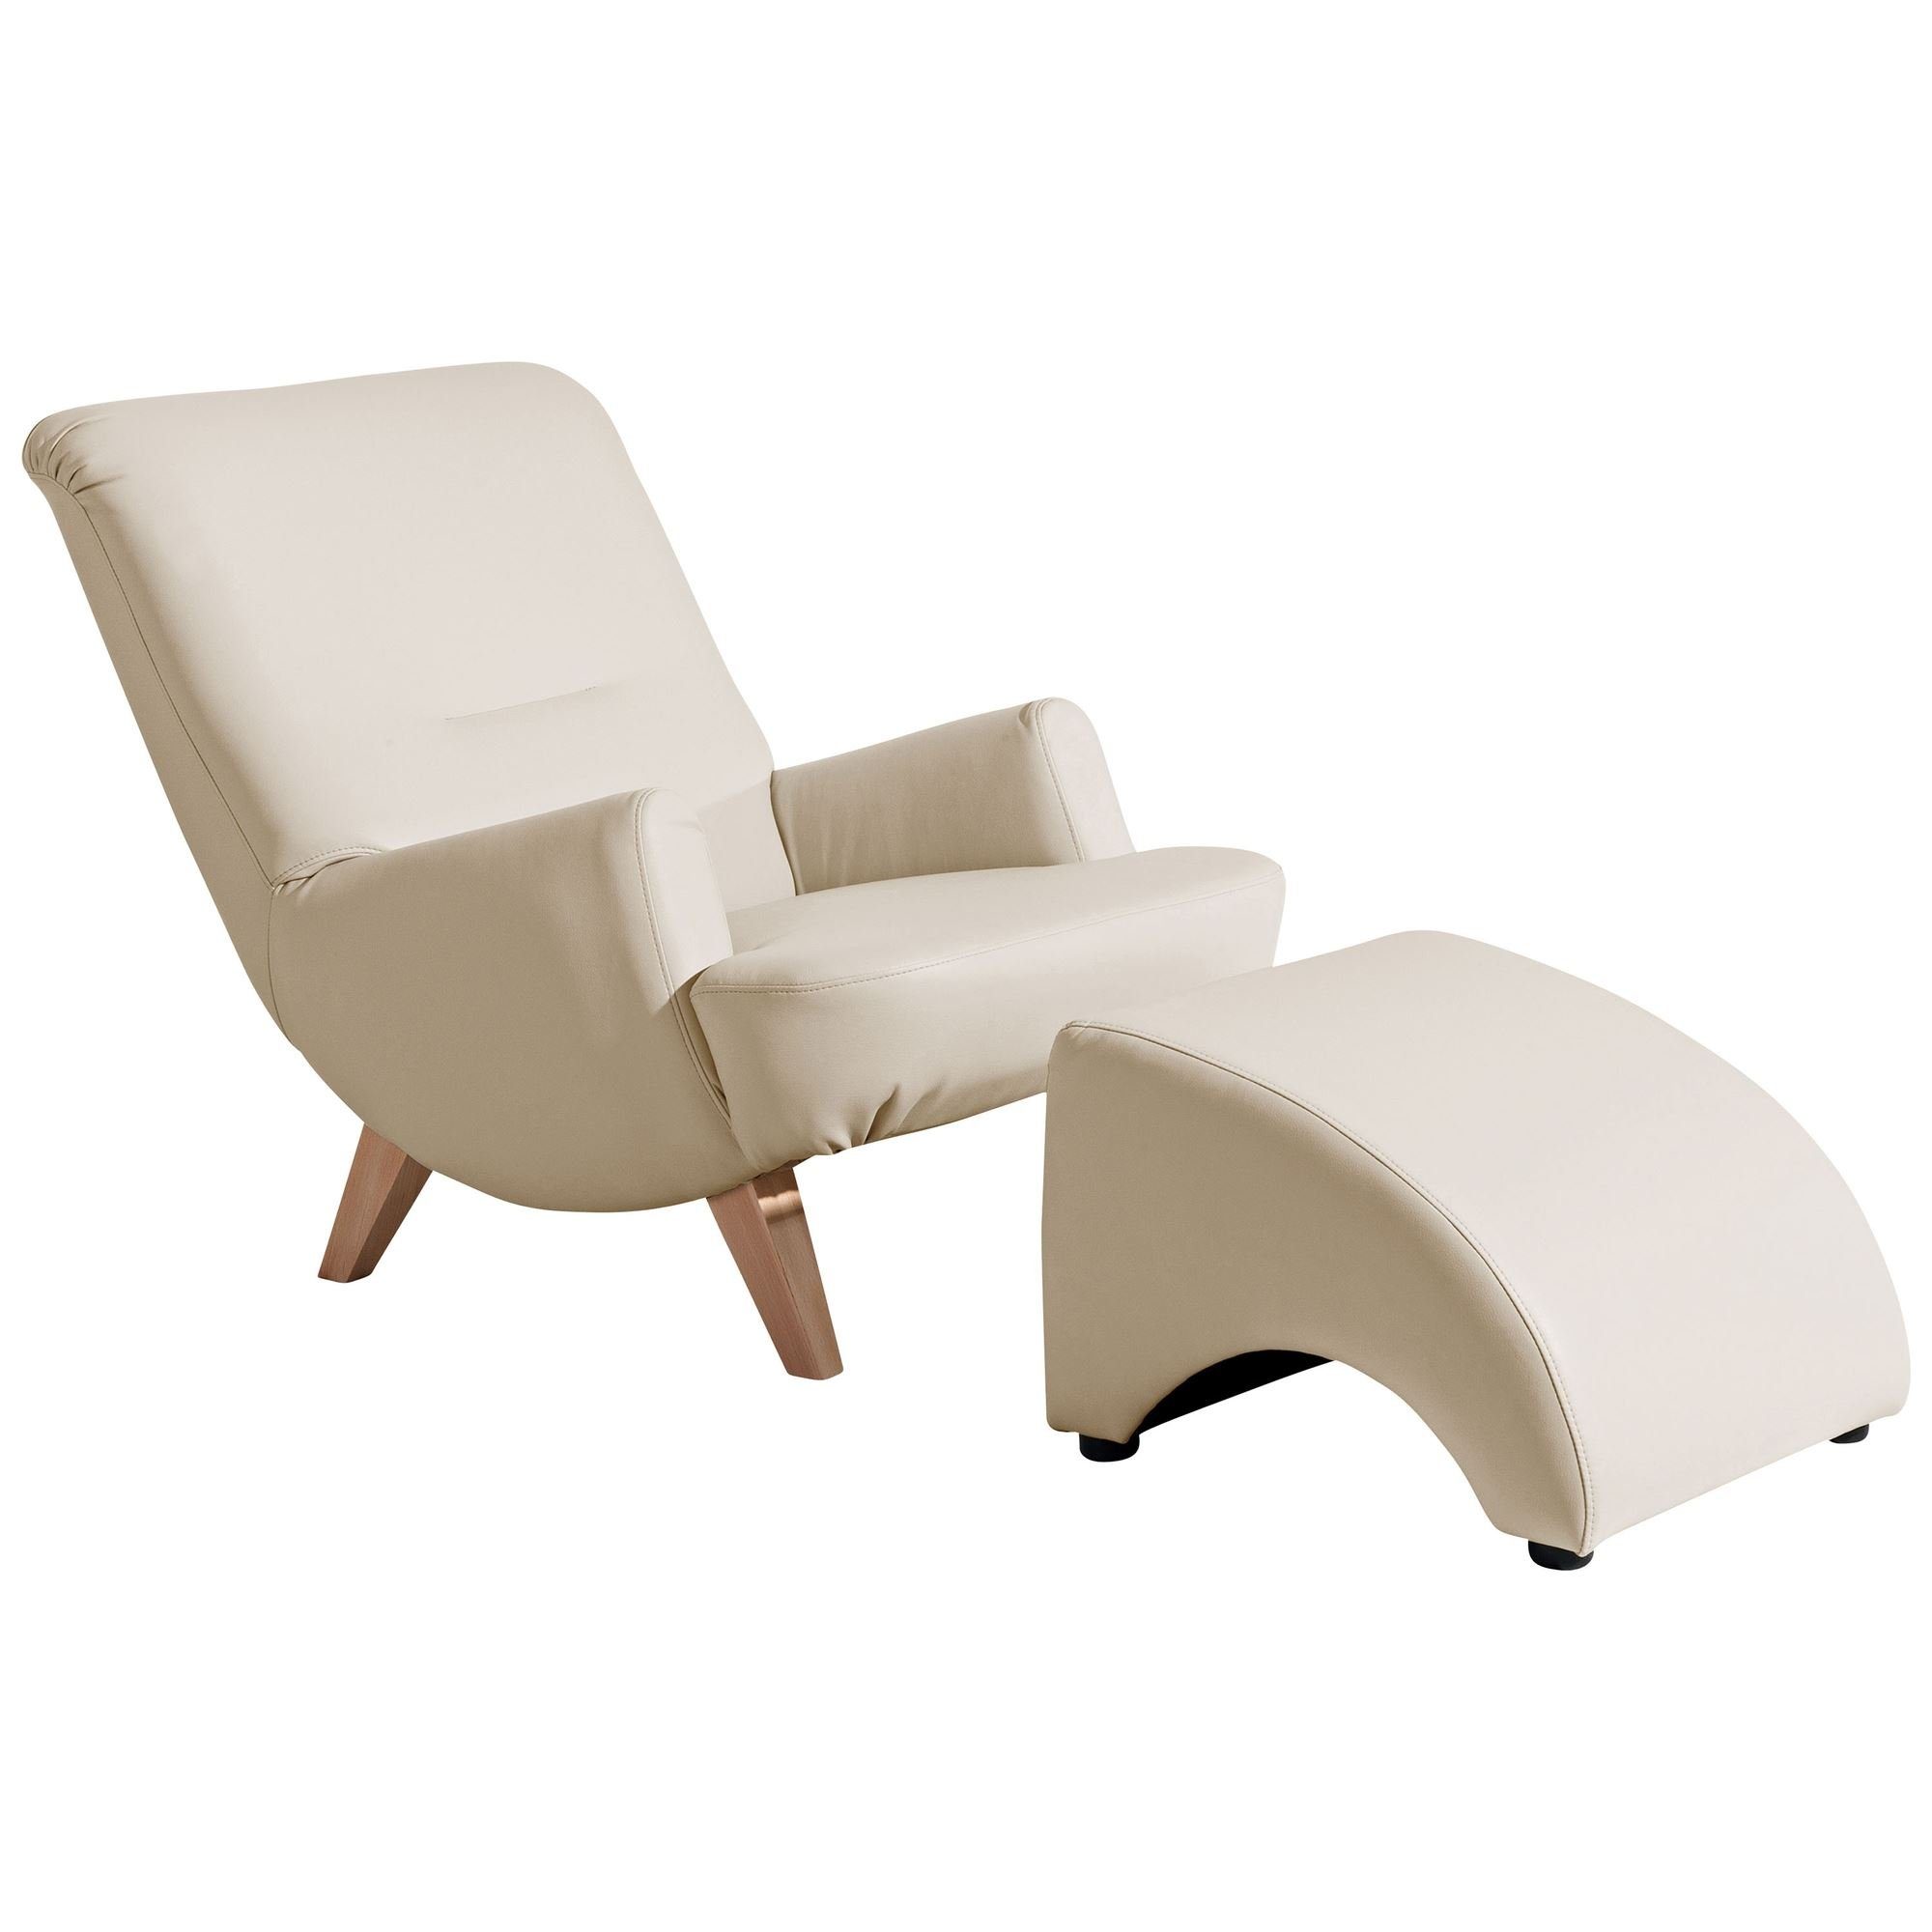 Kessel (Sparpreis Kostenlosem Versand, inkl. Sitz Buche / 21326 verarbeitet,bequemer hochwertig aufm Kajsa 58 1-St), Sessel Sessel beige Bezug natur Kunstleder